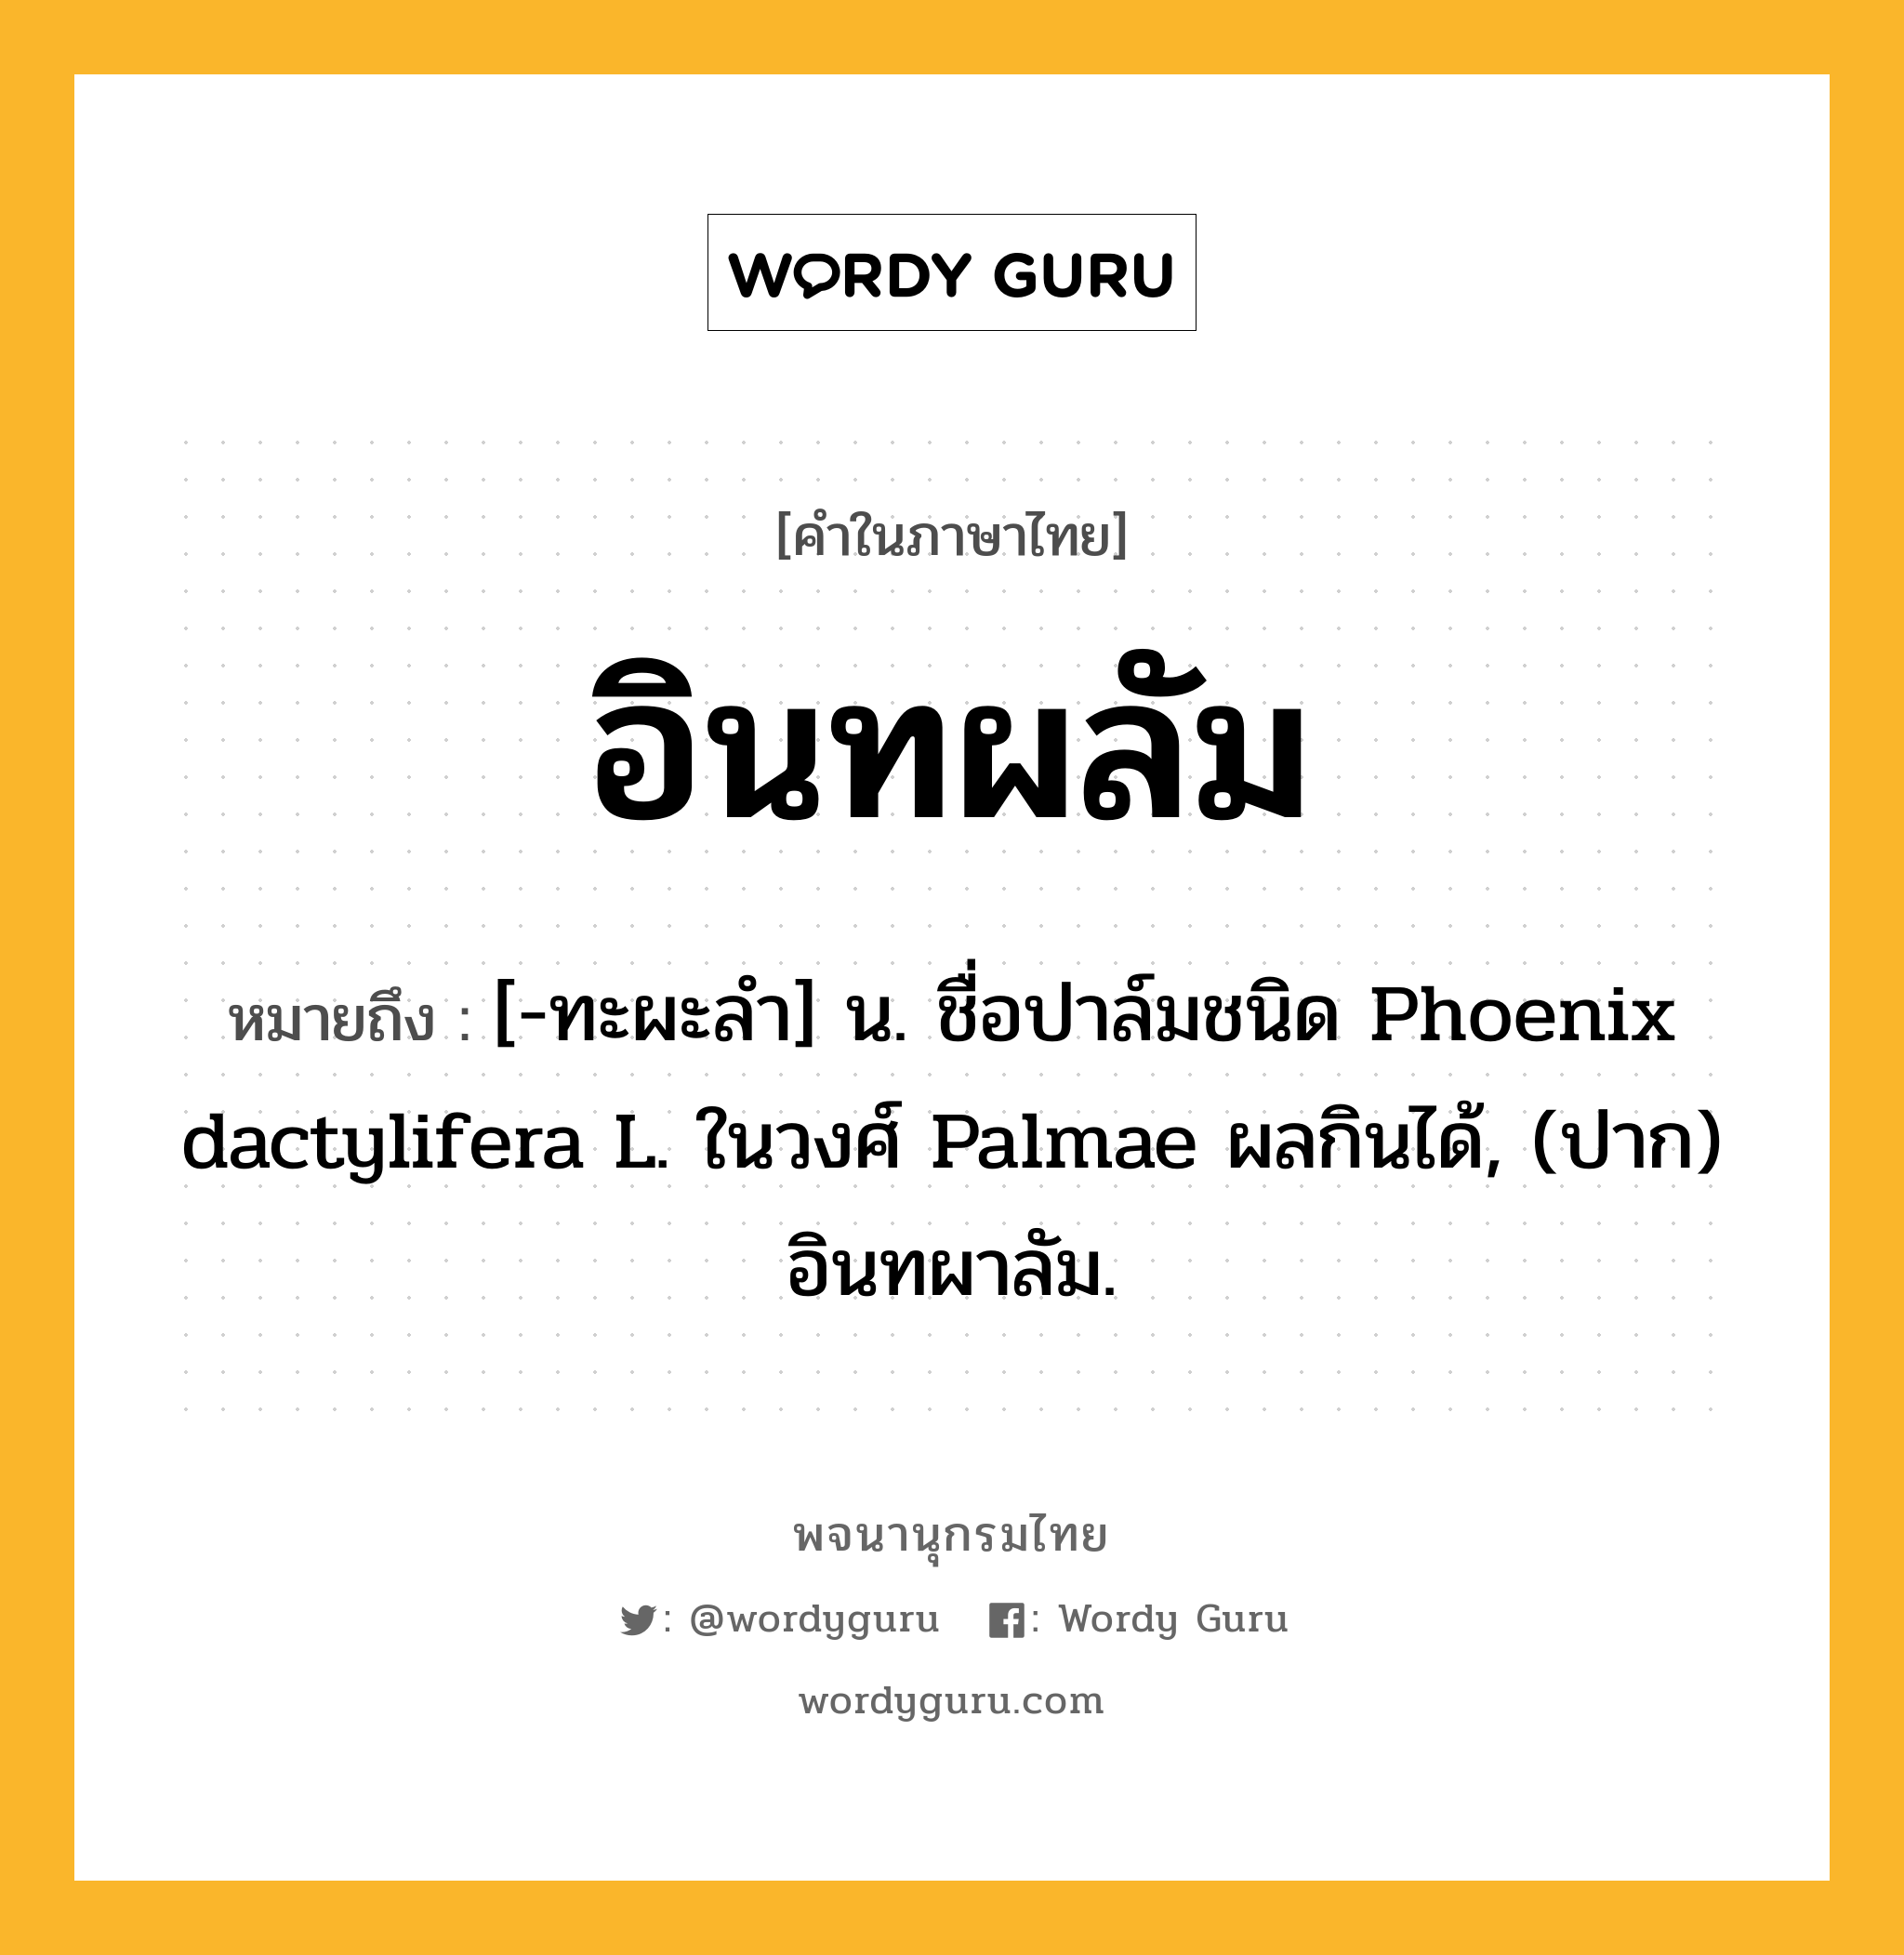 อินทผลัม ความหมาย หมายถึงอะไร?, คำในภาษาไทย อินทผลัม หมายถึง [-ทะผะลํา] น. ชื่อปาล์มชนิด Phoenix dactylifera L. ในวงศ์ Palmae ผลกินได้, (ปาก) อินทผาลัม.